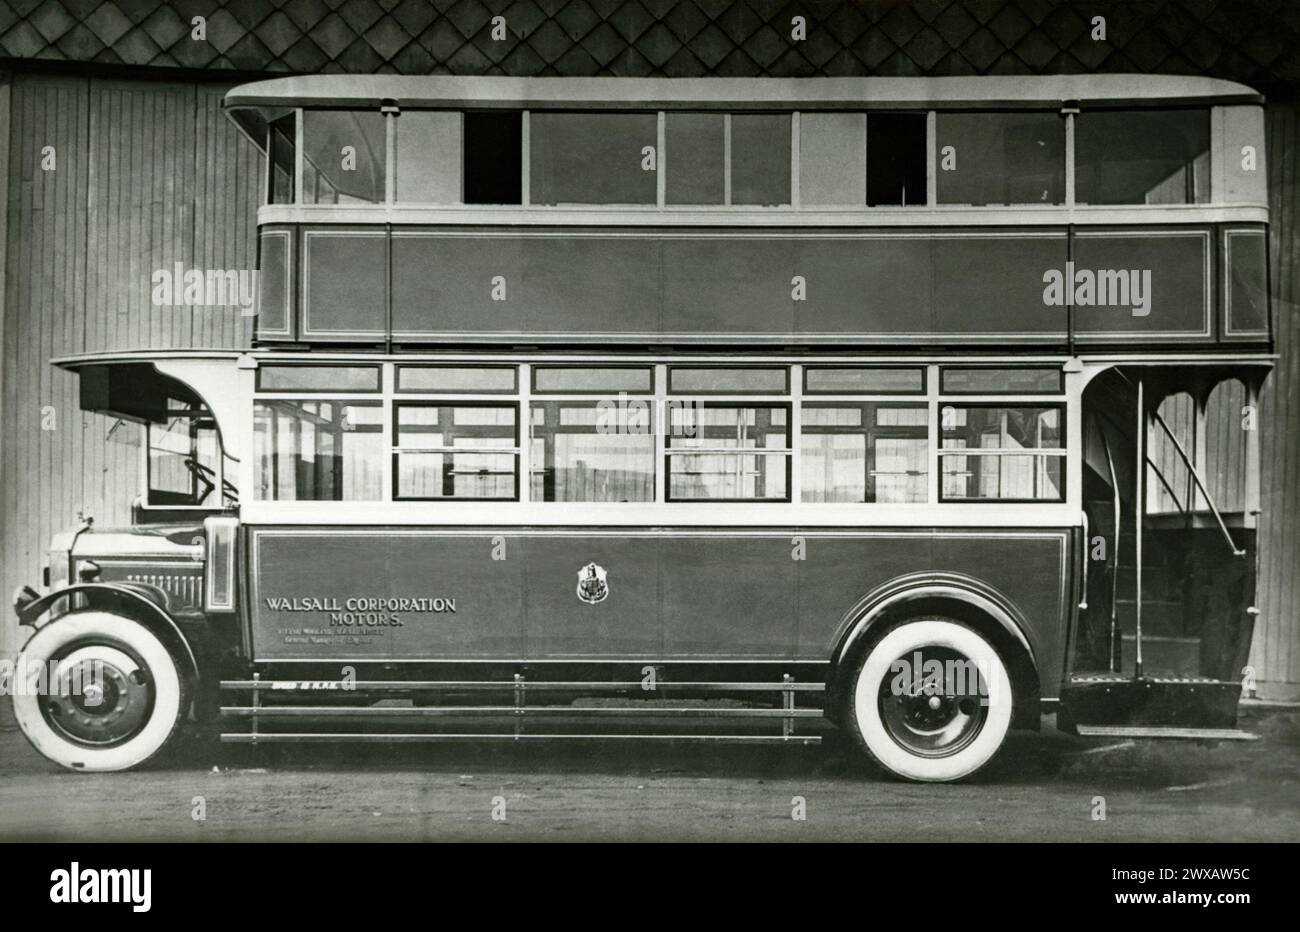 Ein Doppeldeckerbus der Walsall Corporation Motors um 1930 – er wurde auf Strecken in und um Walsall, West Midlands, England, eingesetzt. Die Nummer 21 hatte ein Dennis-Fahrgestell, einen Benzinmotor und eine Karosserie, die von kurzen Mühen gebaut wurde, und begann 1929 in Walsall. Das ist ein altes Fotoalbum – ein Vintage-Foto aus den 1920er/30er Jahren. Stockfoto